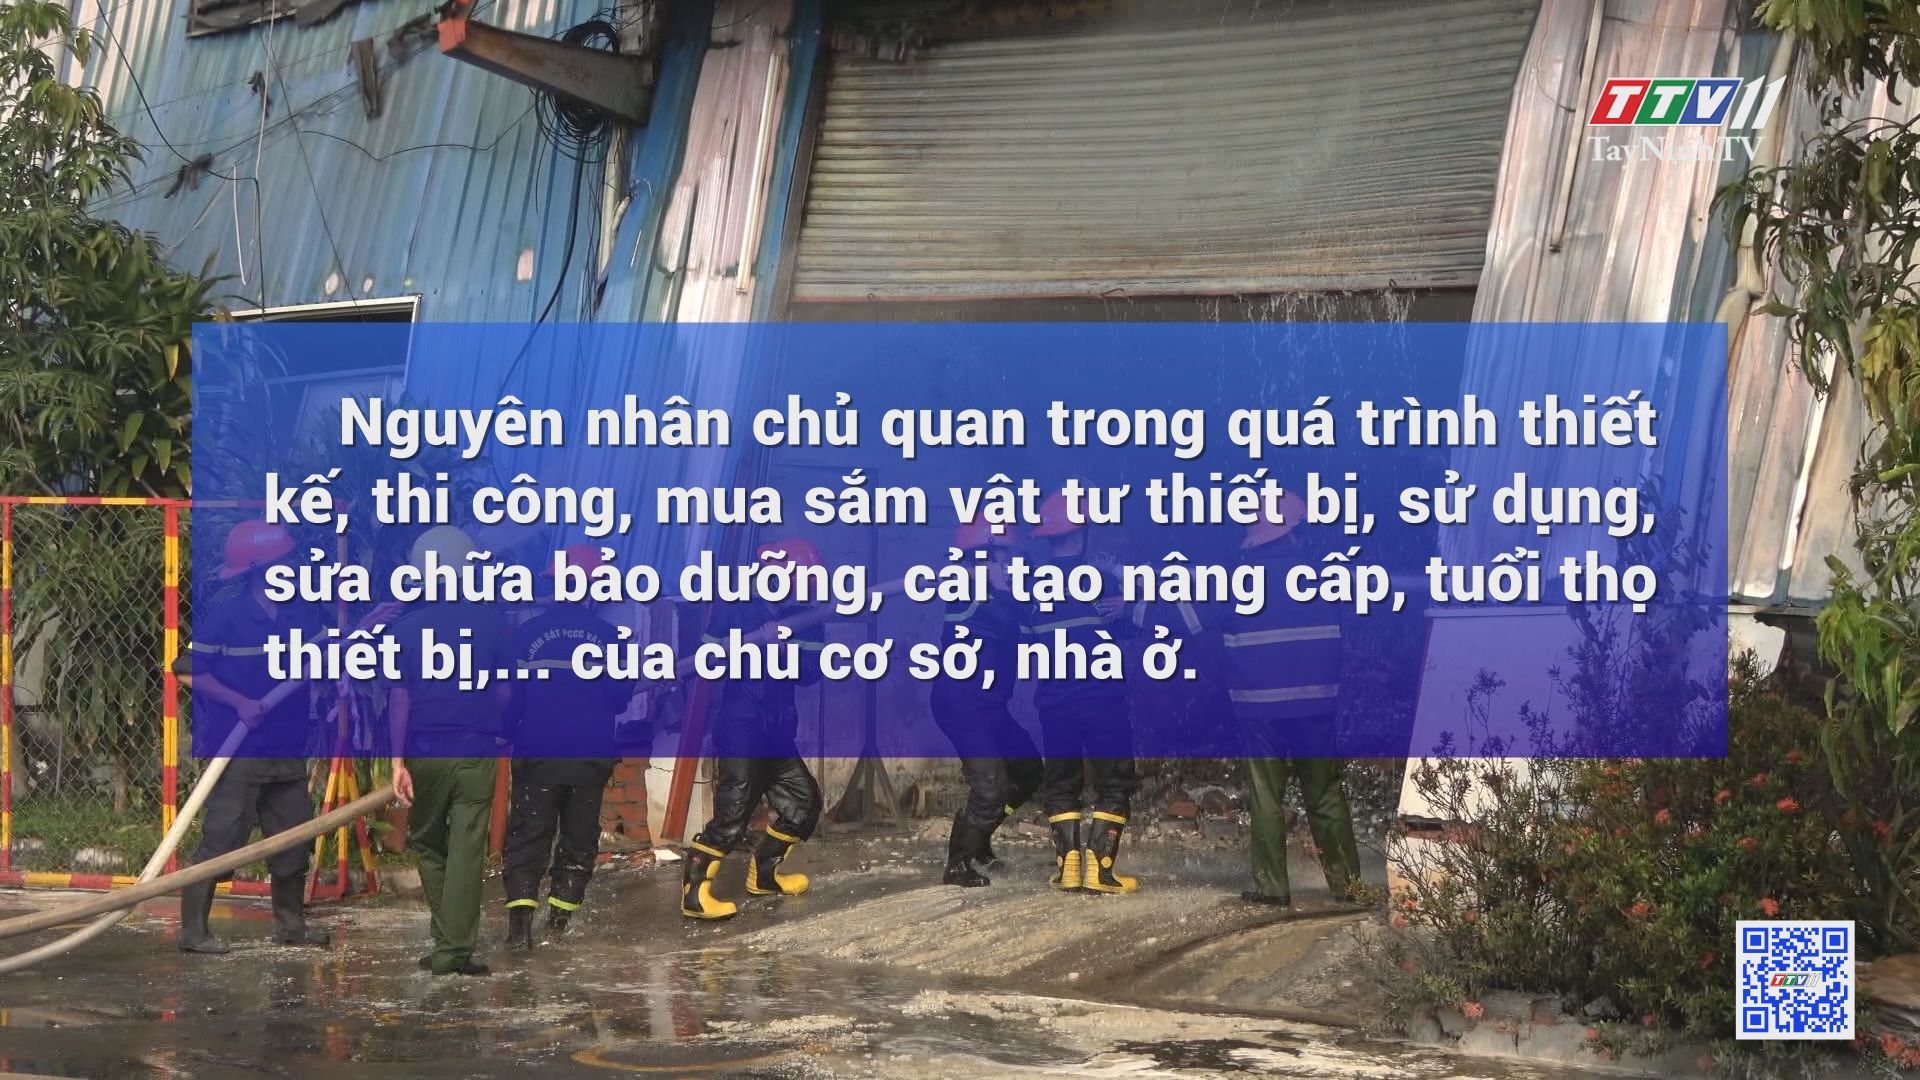 An toàn cháy nổ khi sử dụng thiết bị điện | ĐIỆN VÀ CUỘC SỐNG | TayNinhTV